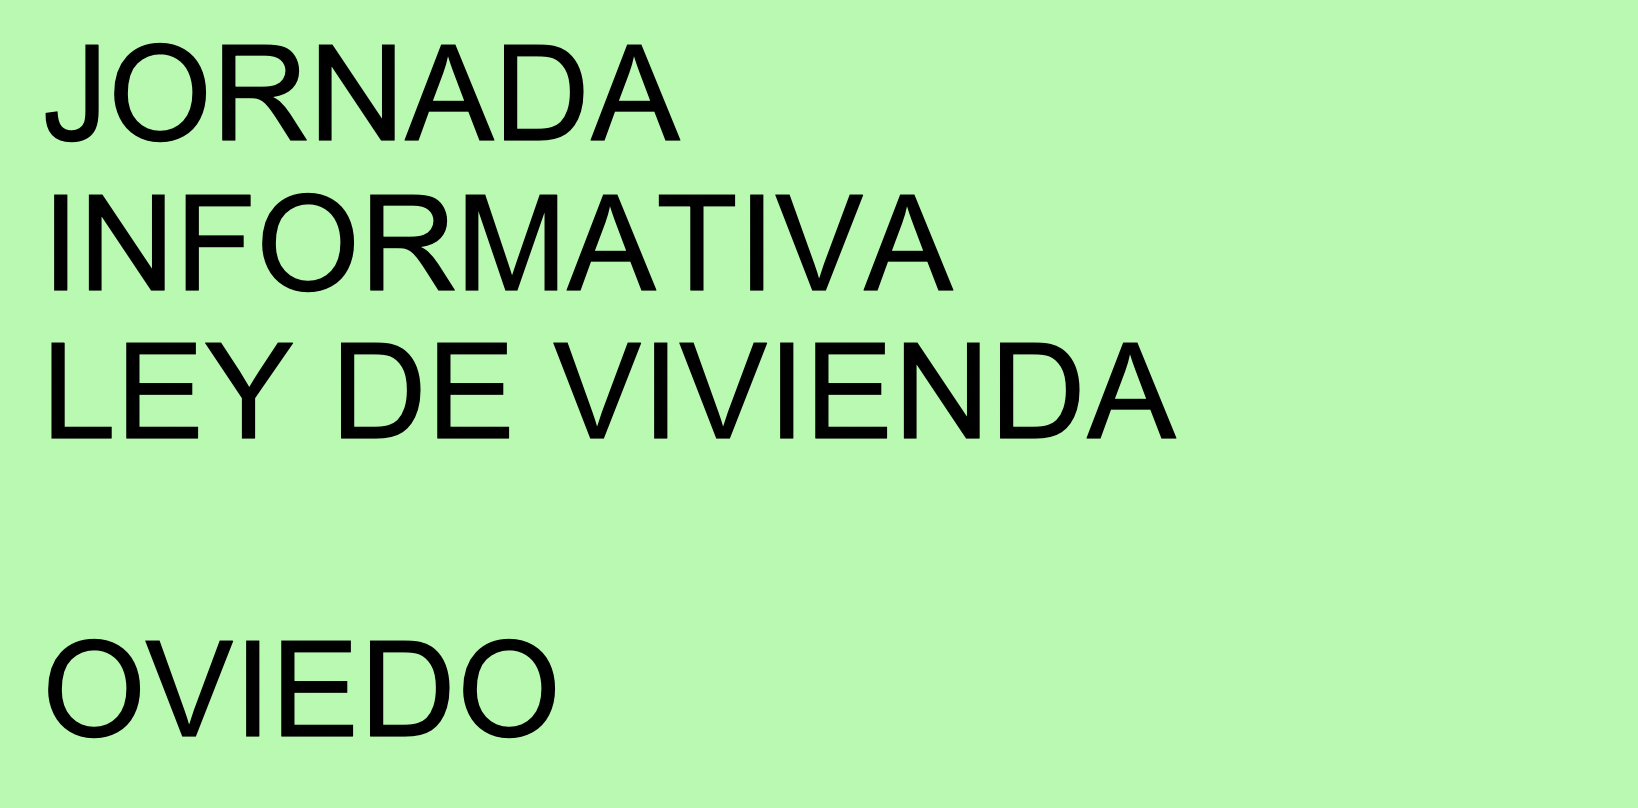 LEY DE VIVIENDA: Jornada informativa en Oviedo 05/06/23